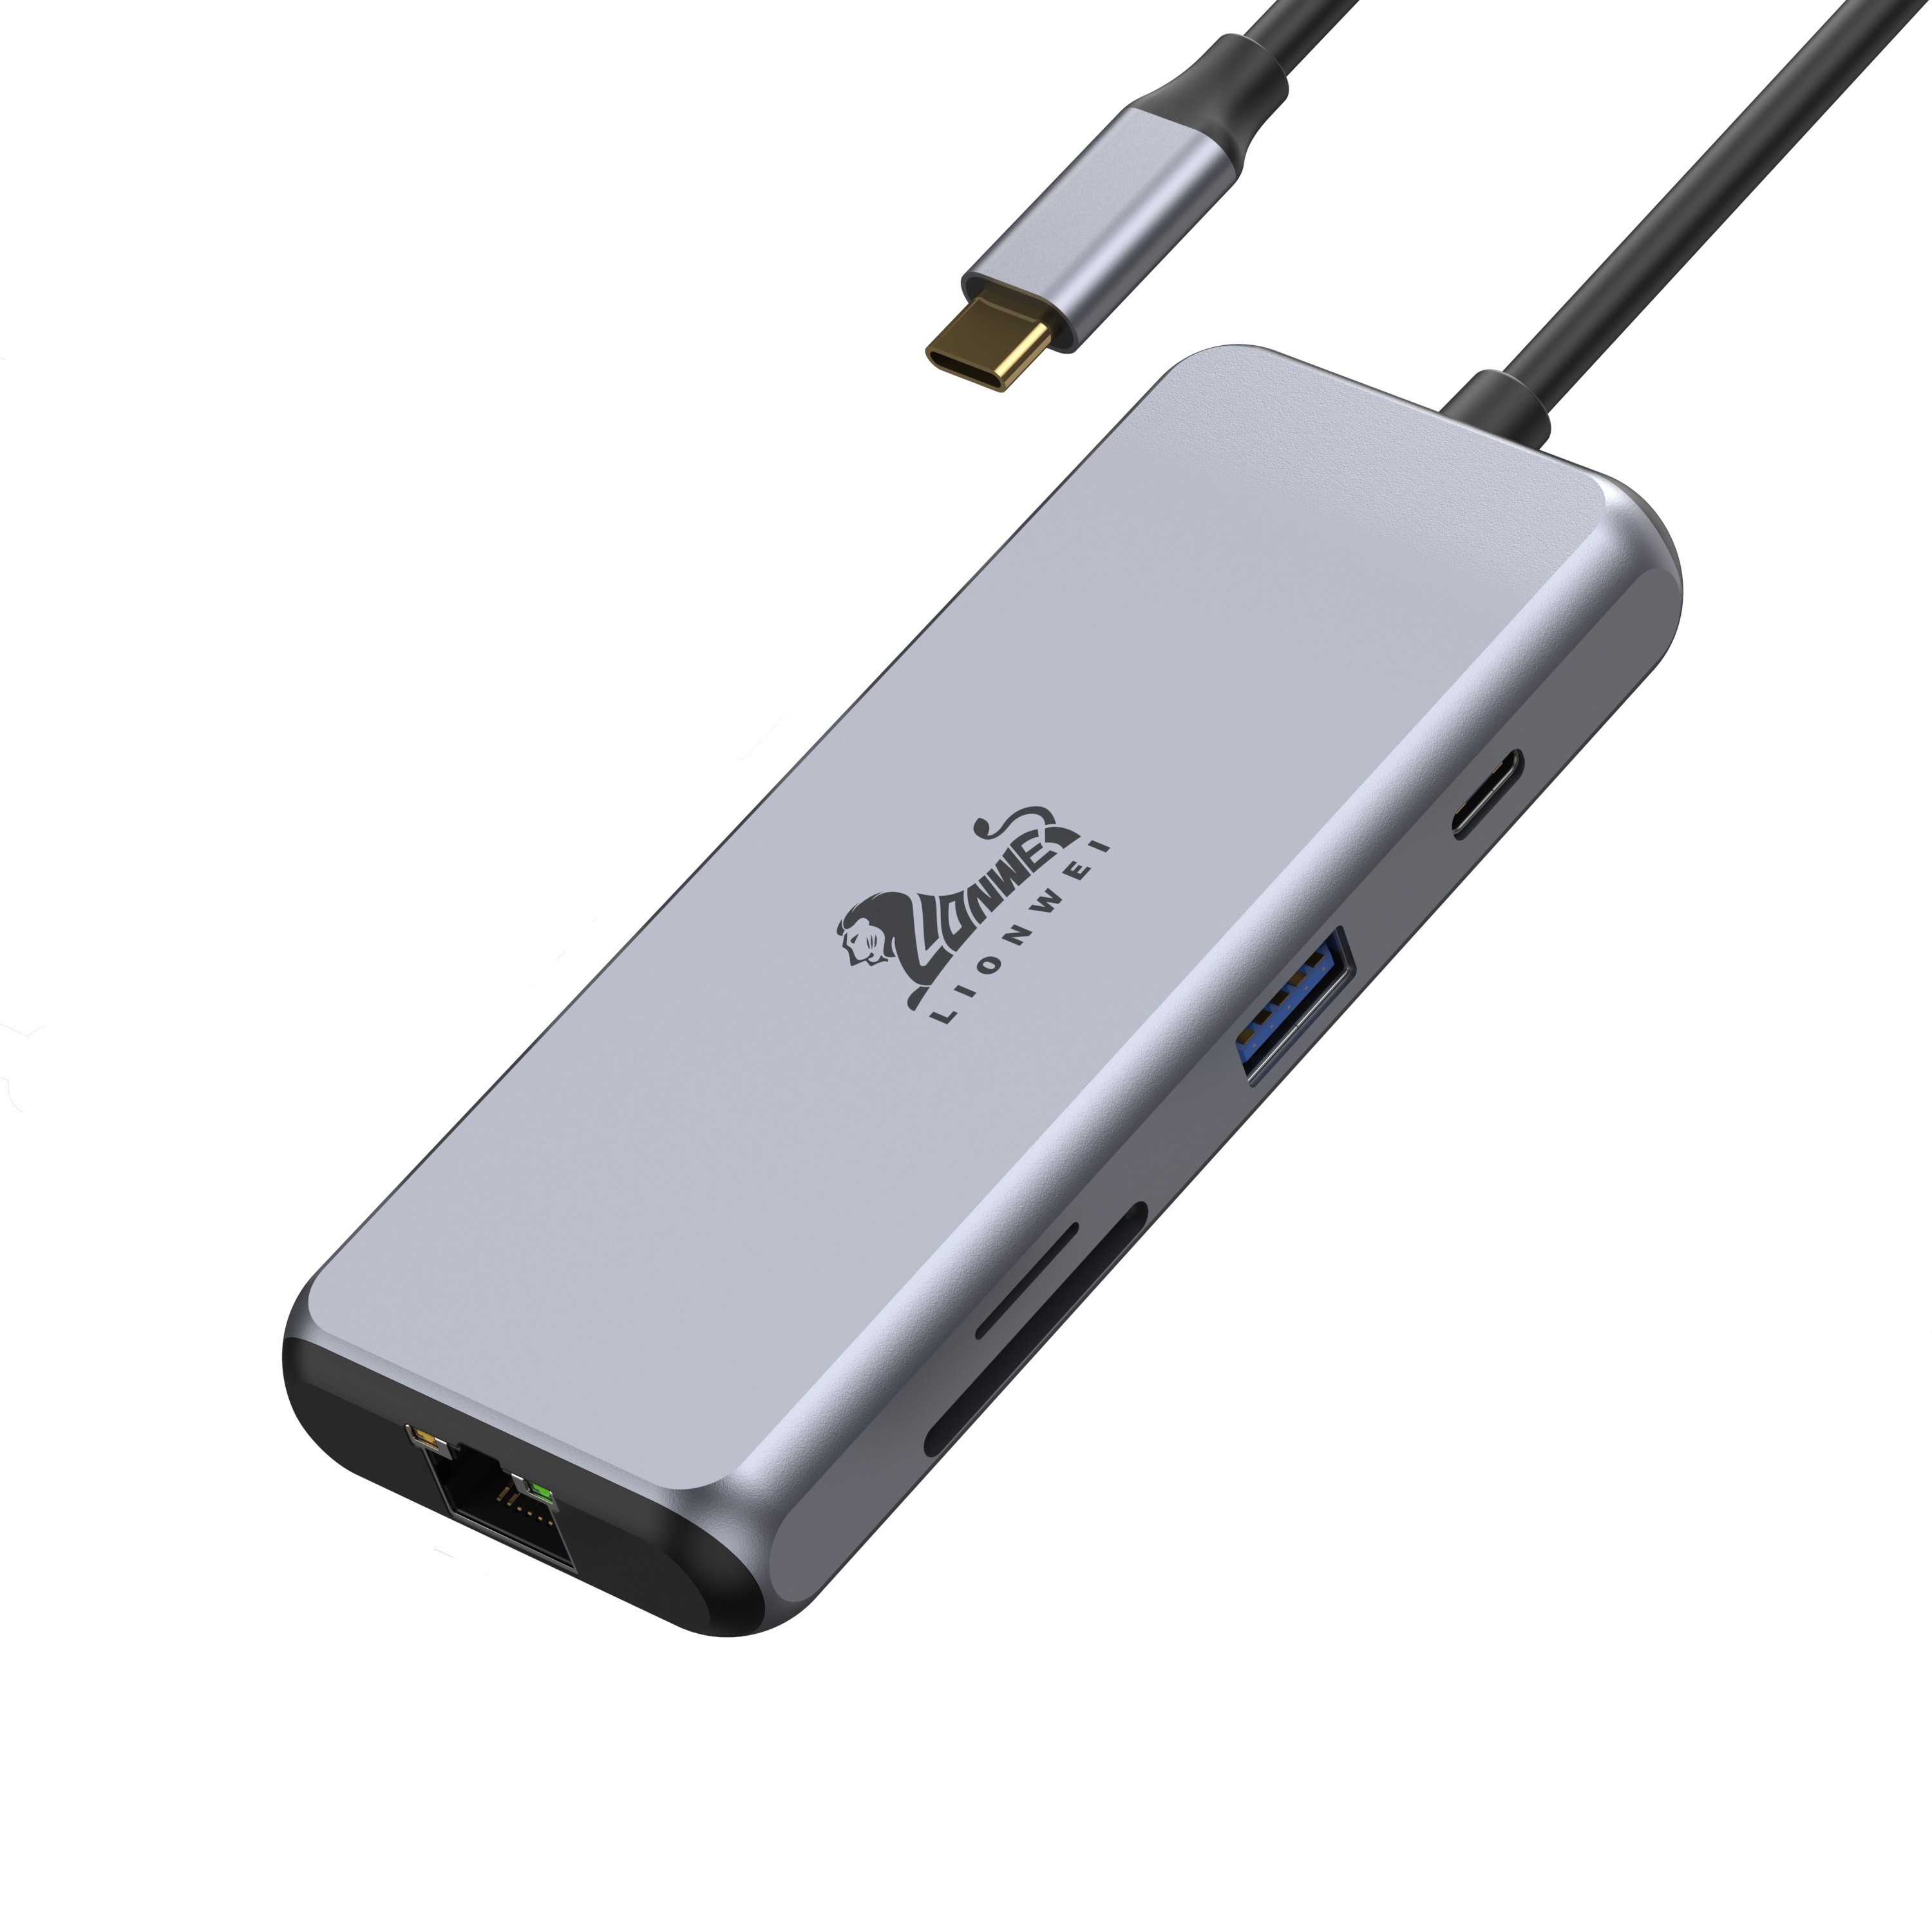 LIONWEI Estación de acoplamiento Dual 4K @60Hz HDMI, 9 en 1 USB C Hub  Monitores duales con USB C 3.0, 2 USB A, puerto PD, SD/TF, Gigabit  Ethernet